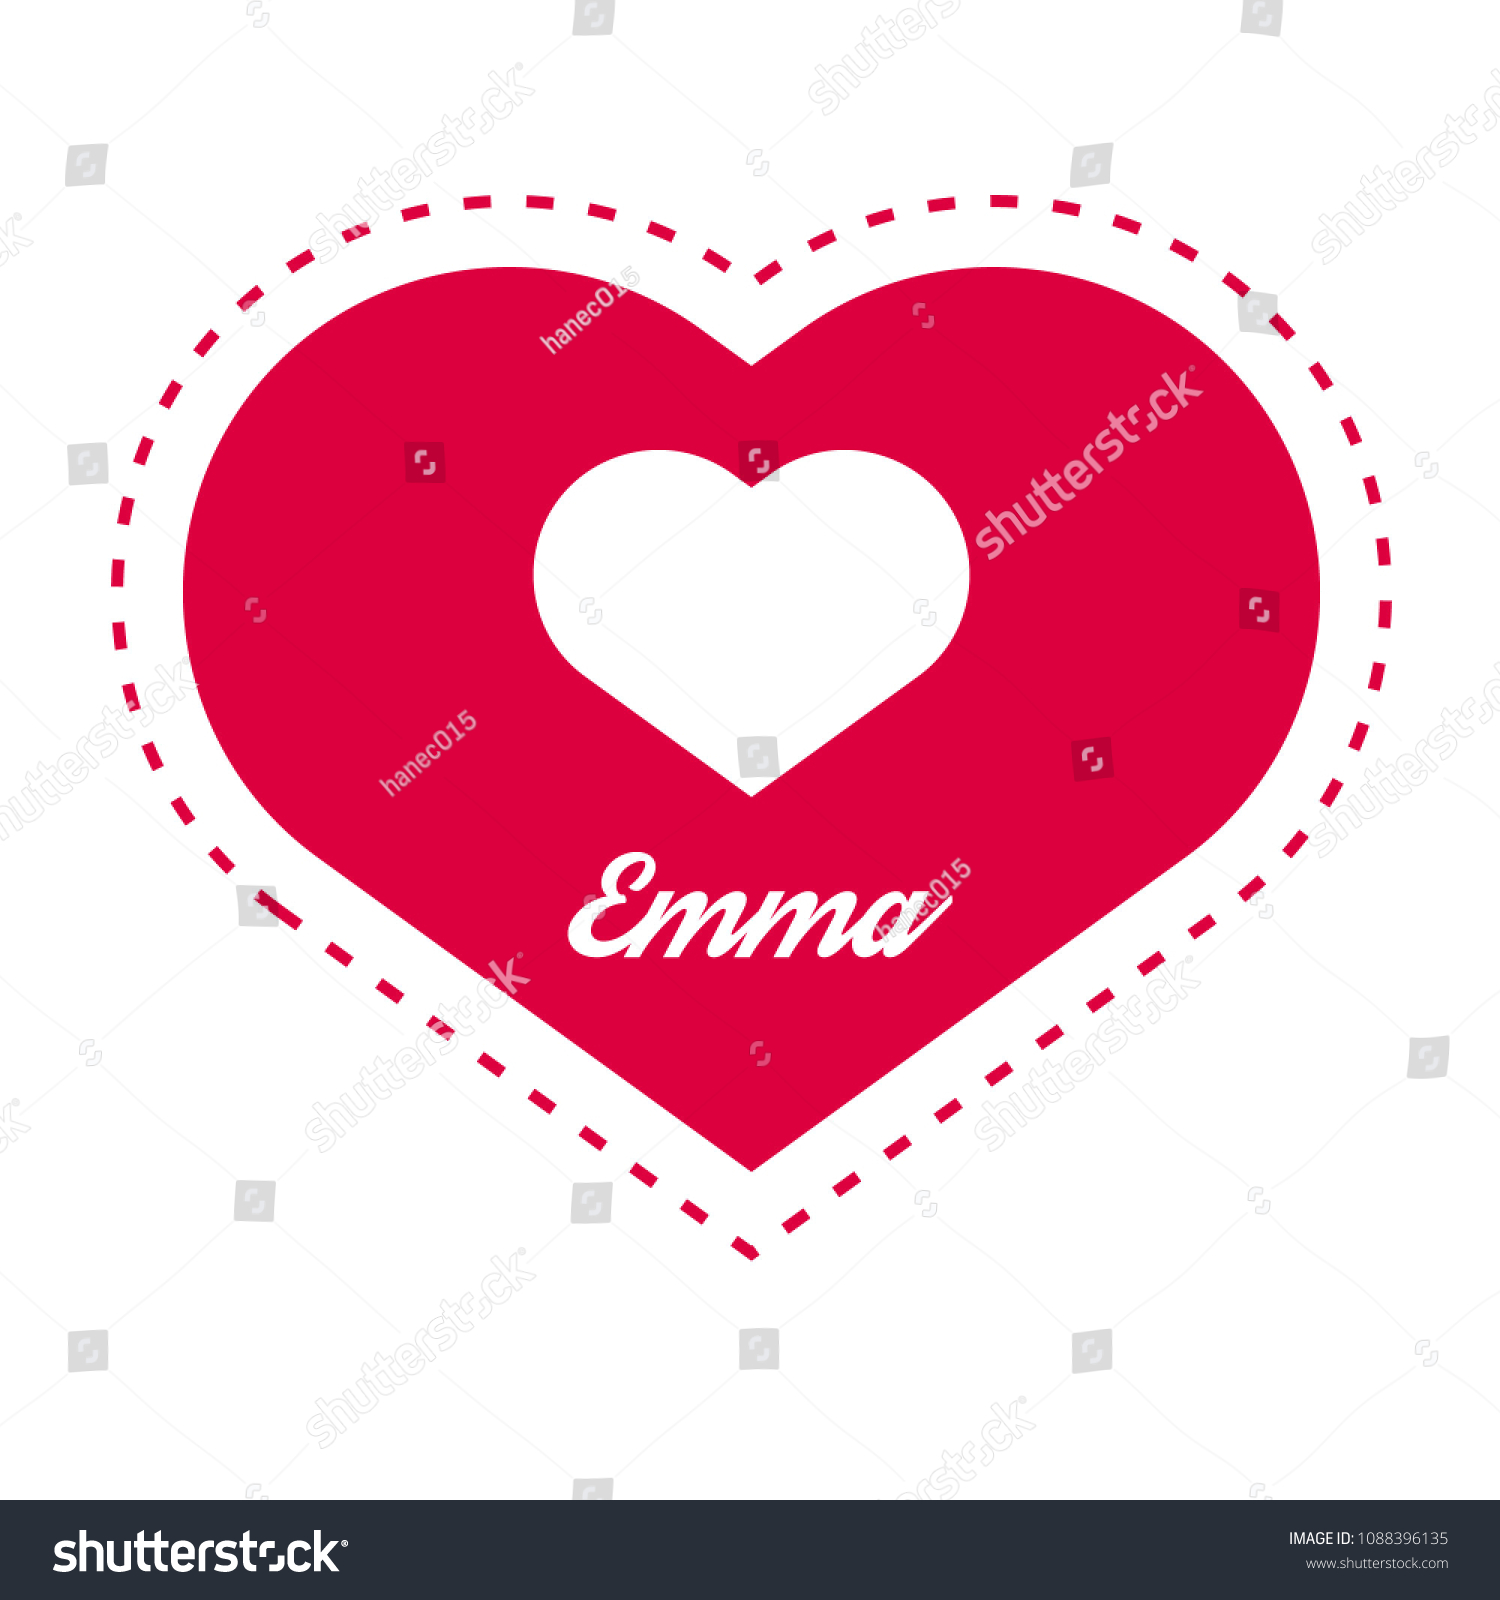 Emma Heart & Holly Fox